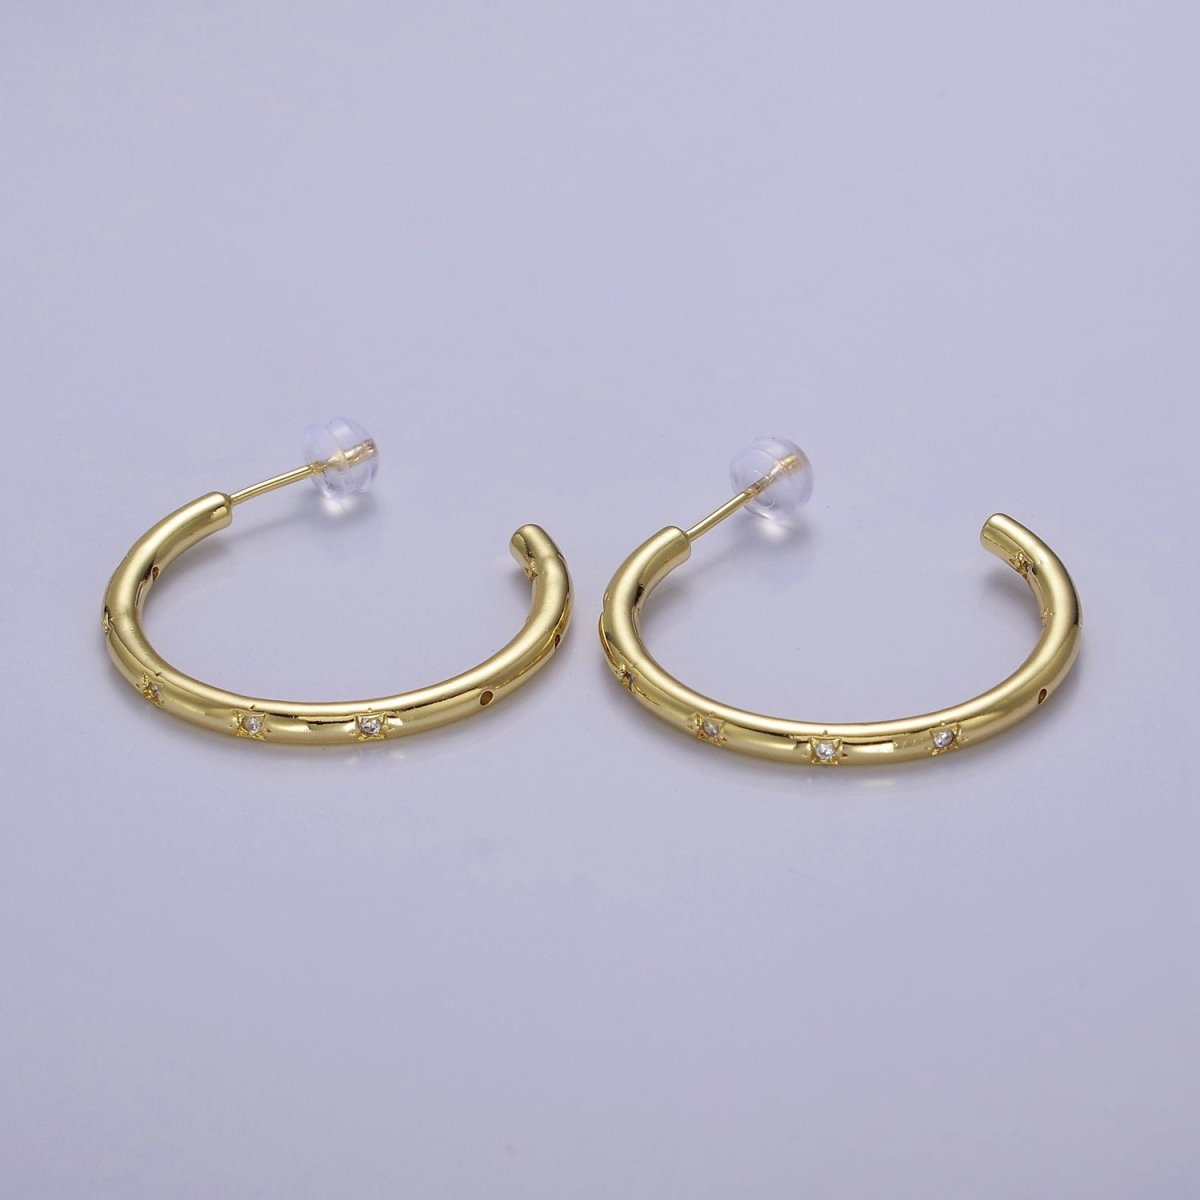 Gold Star Hoop Earring Cz Star Earring Celestial Starburst Everyday Jewelry V-167 V-168 V-169 - DLUXCA